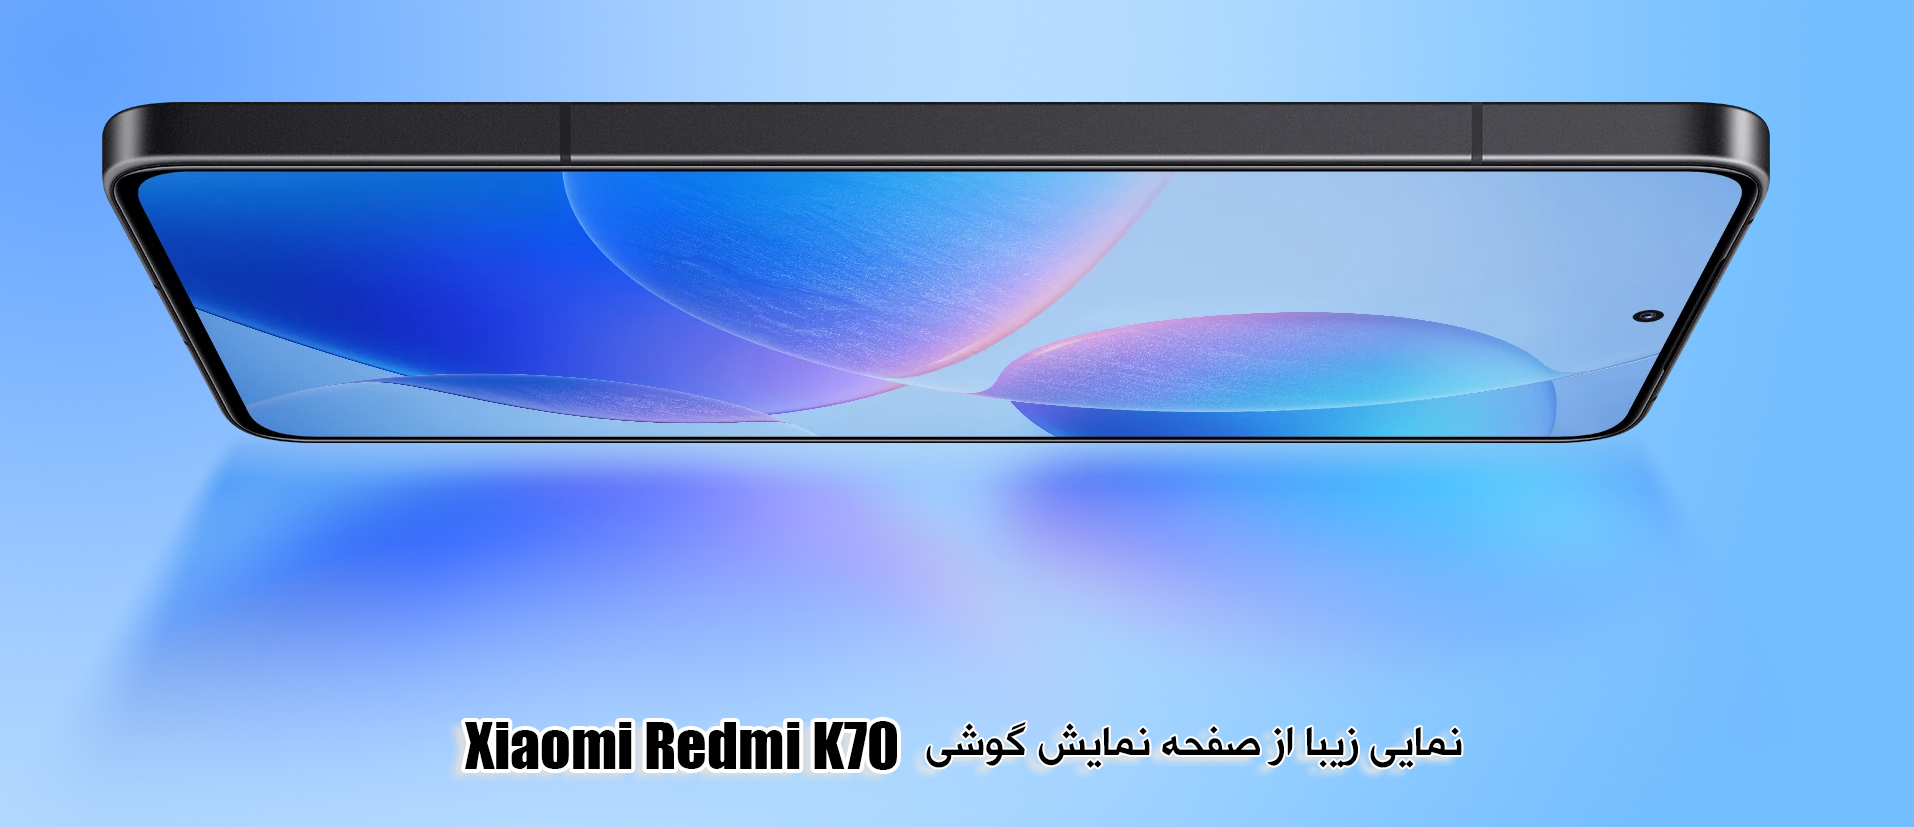 نمایی از صفحه نمایشXiaomi-Redmi K70